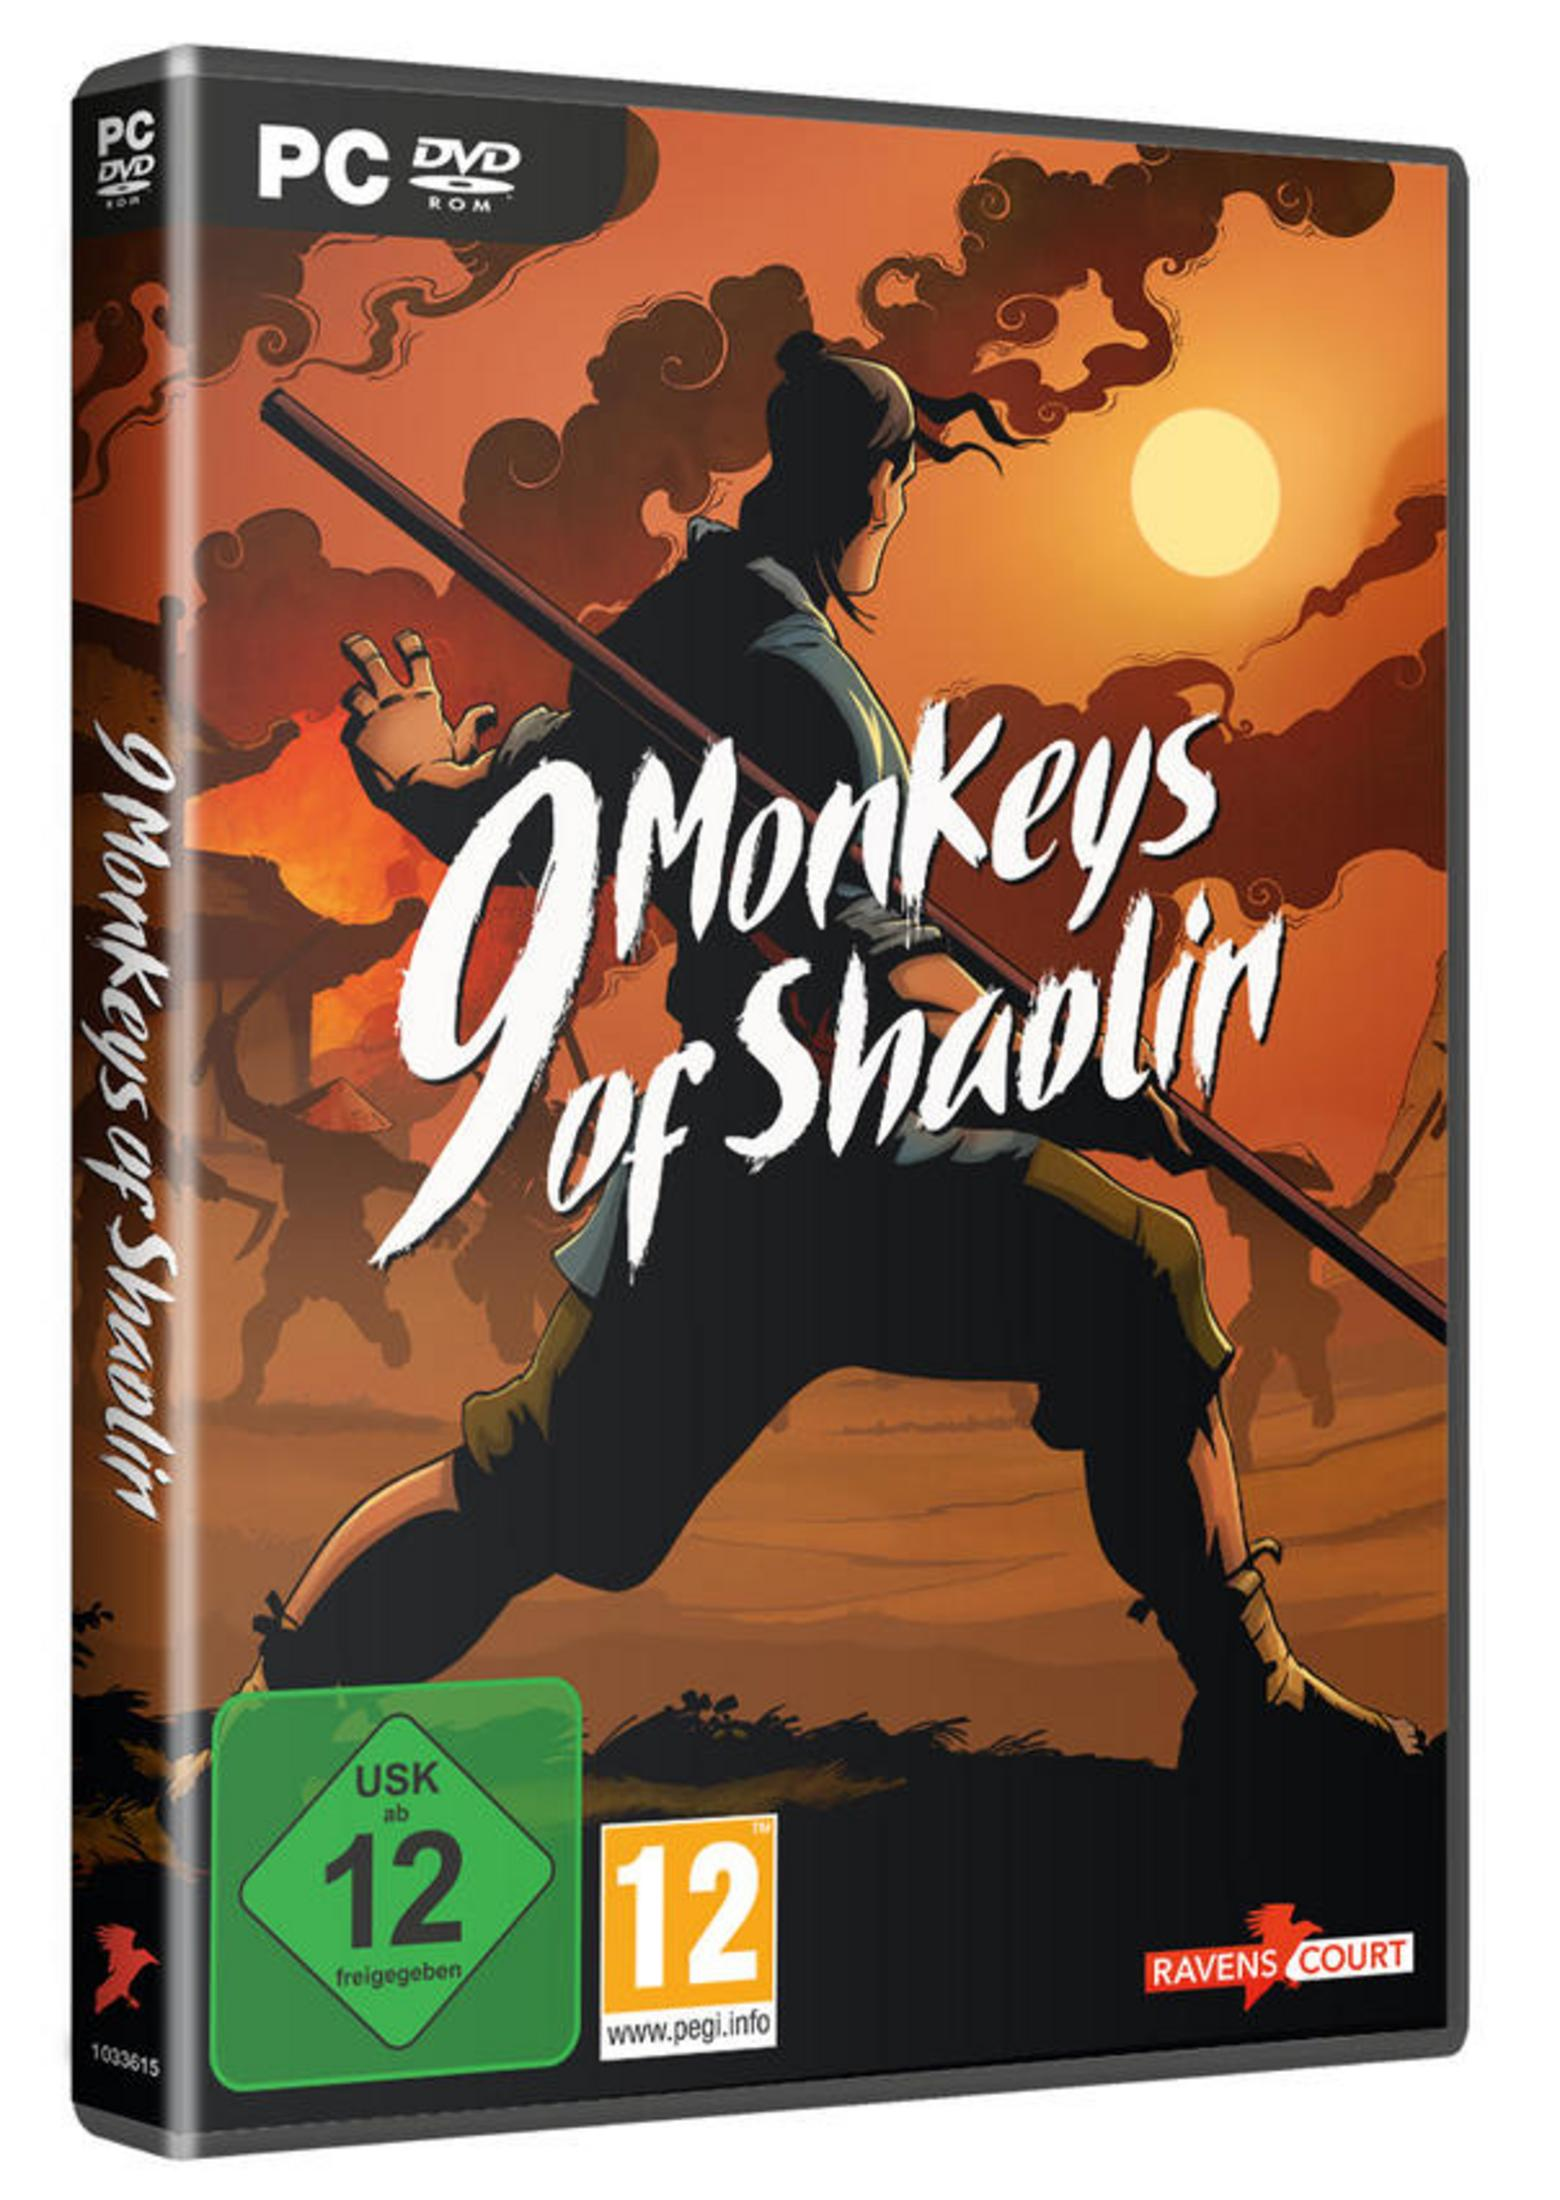 9 Monkeys [PC] - of Shaolin